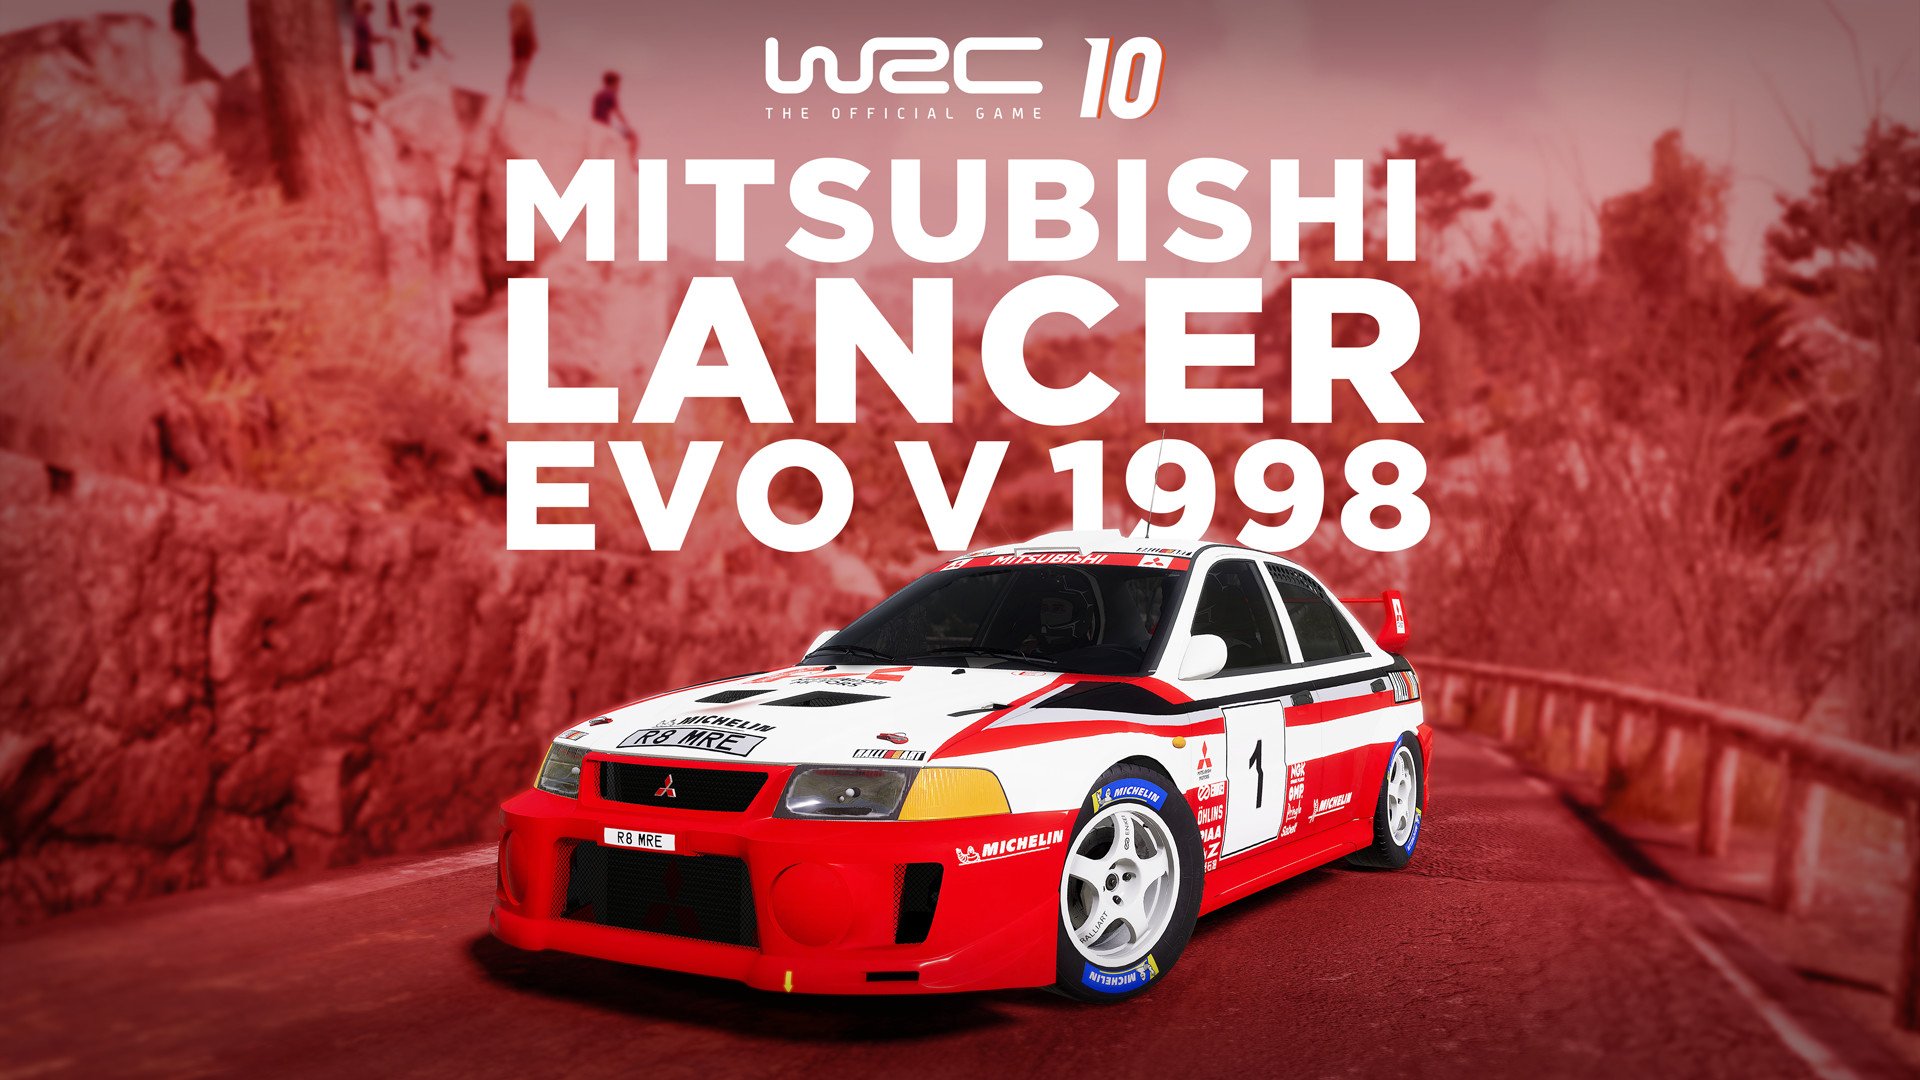 WRC 10 Mitsubishi Lancer Evo V 1998 1